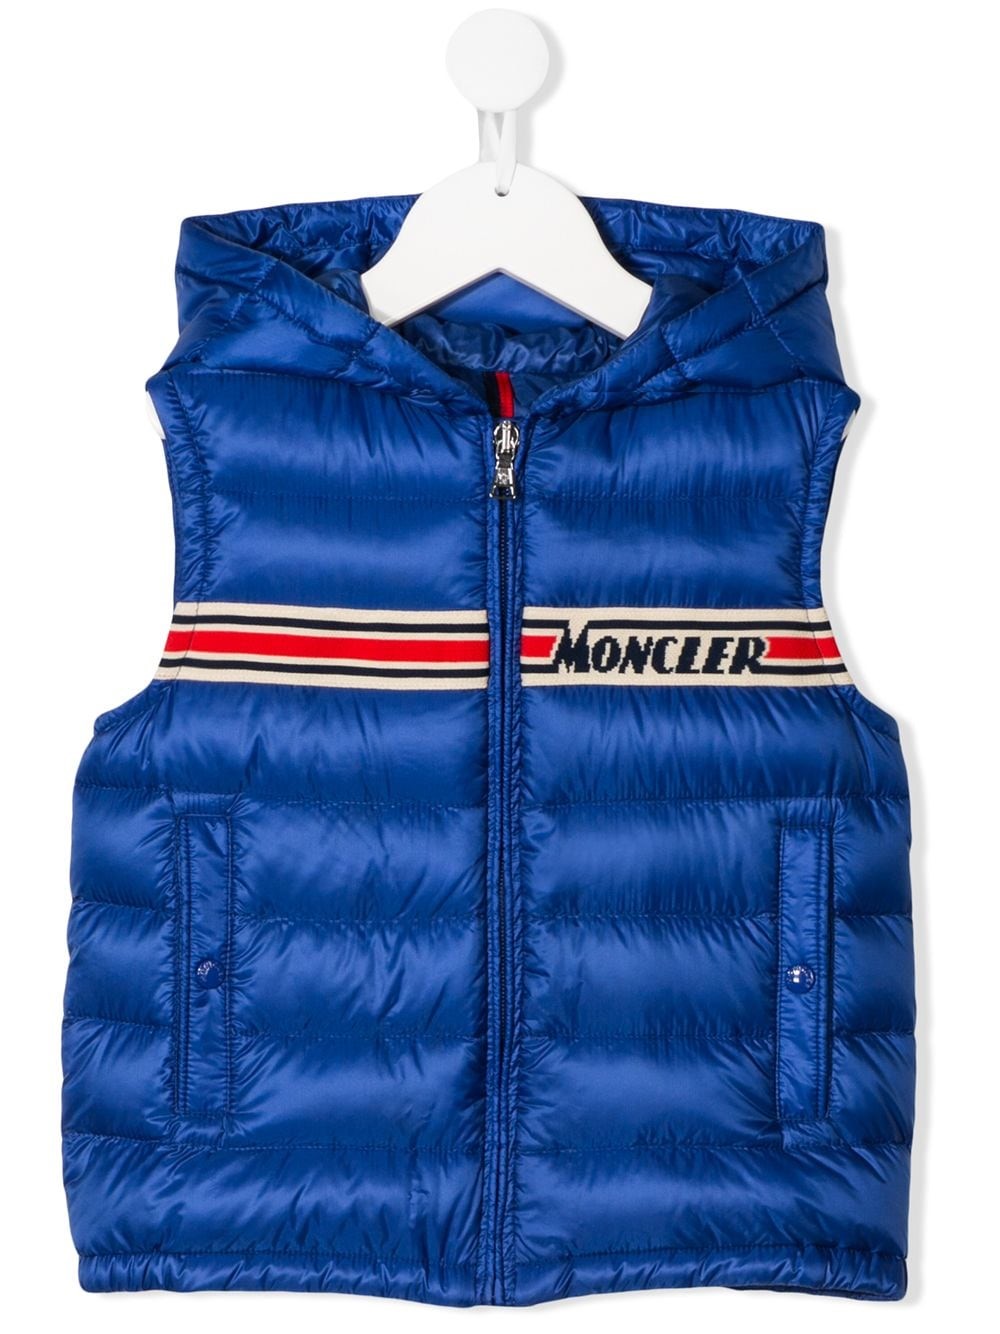 moncler sleeveless jacket